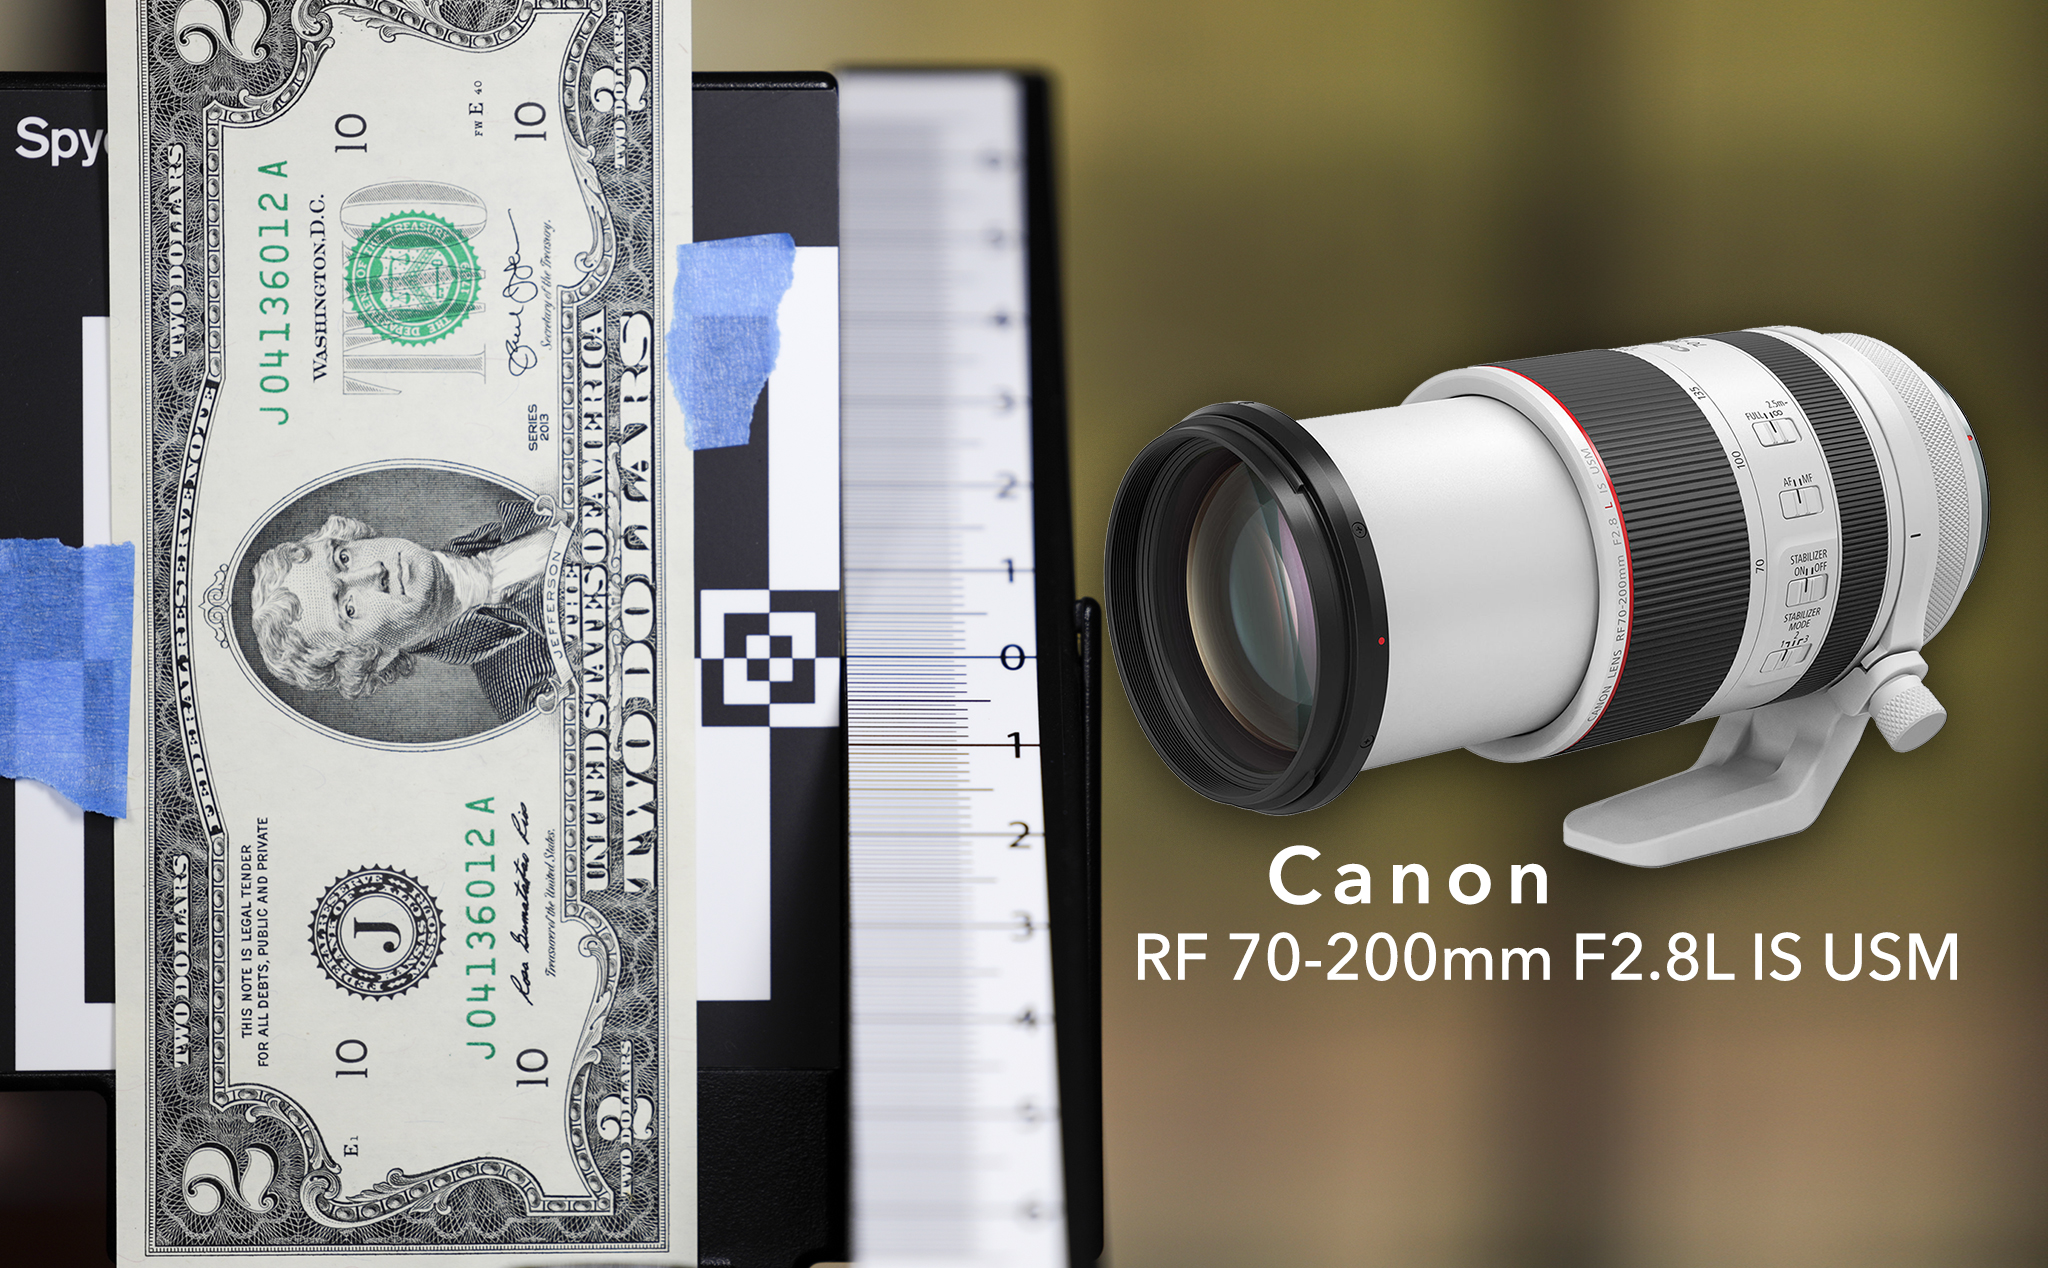 Canon xác nhận lỗi focus trên ống kính RF 70-200mm F2.8 và hứa sẽ khắc phục bằng firmware sắp tới